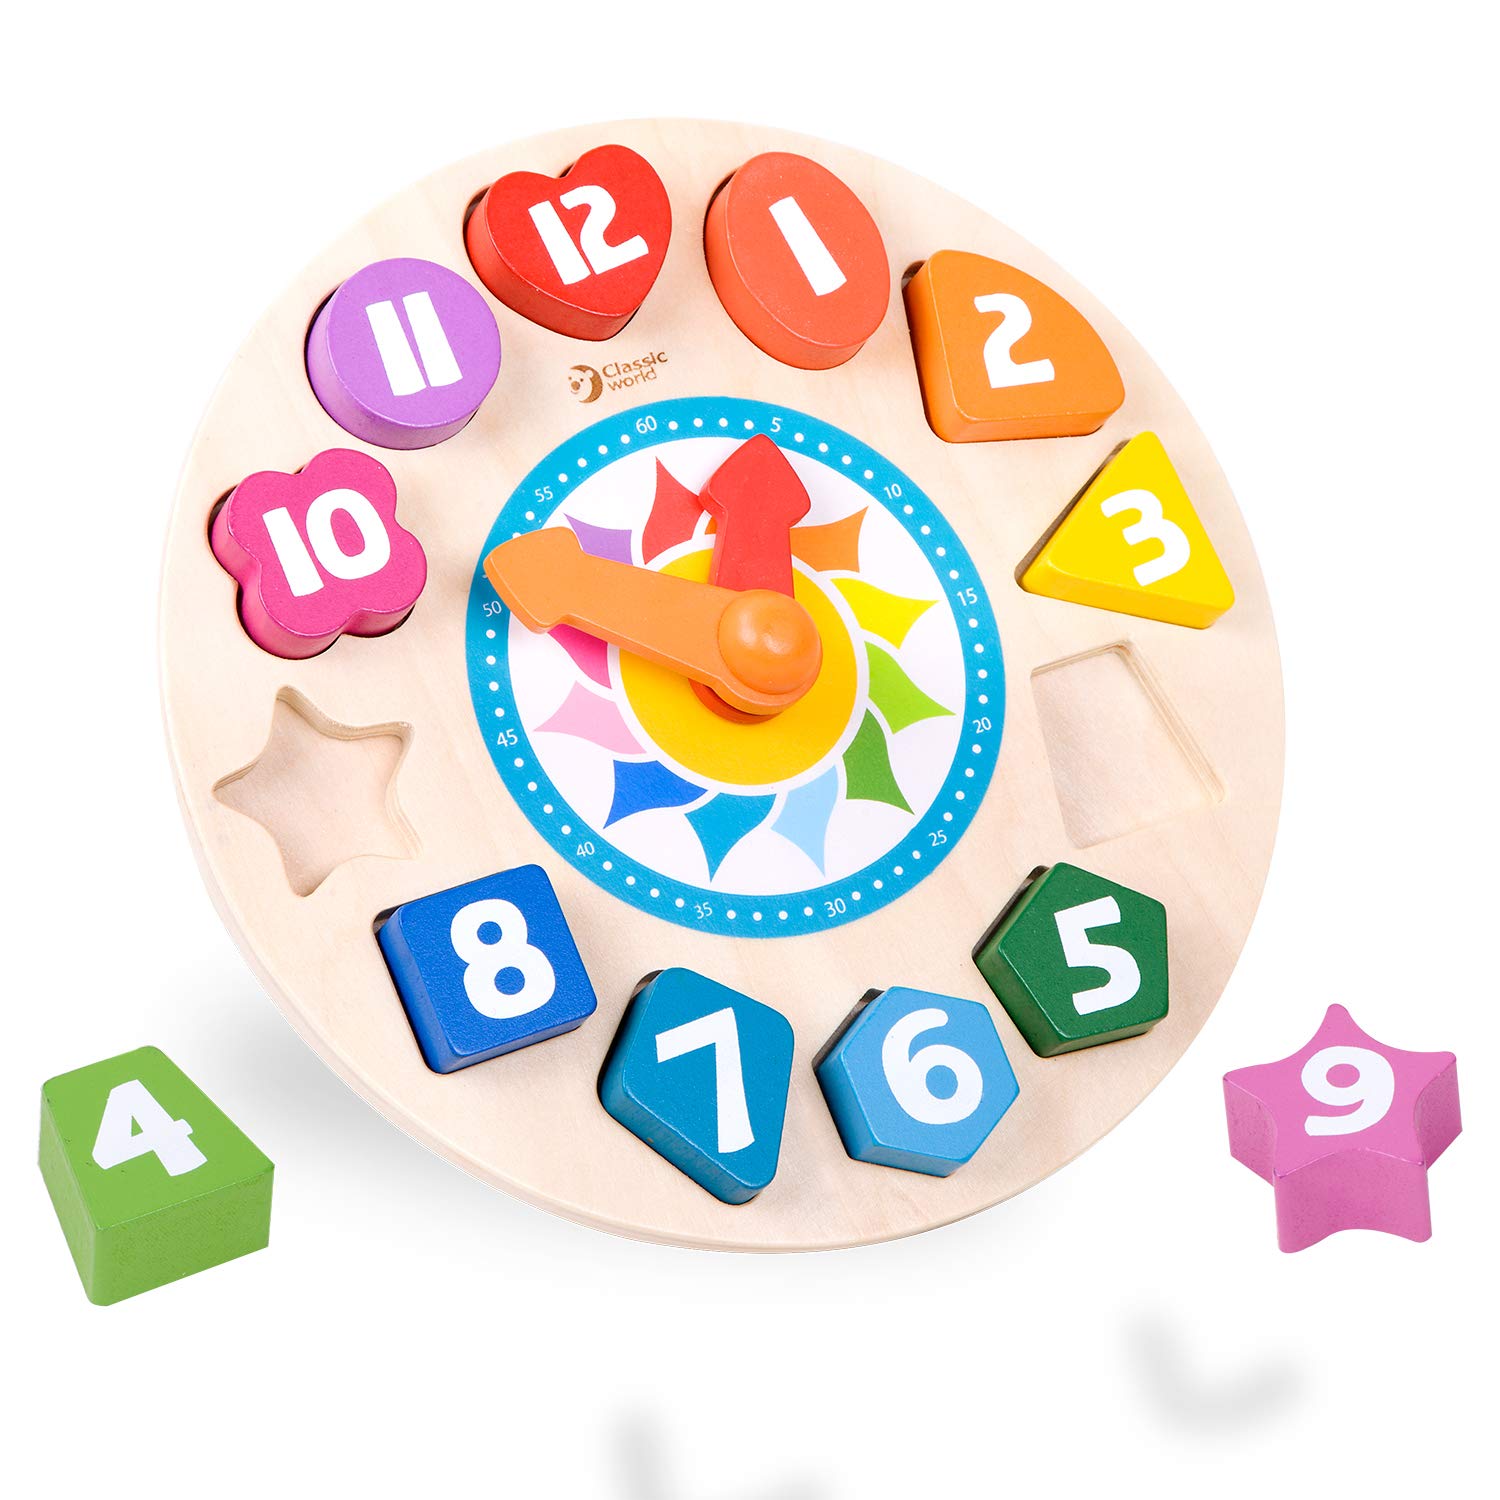 知育時計 時計のおもちゃ かたはめパズル 数字 型はめパズル 木製 時間 知育玩具 3歳 [ Classic World クラシックワールド チクタク